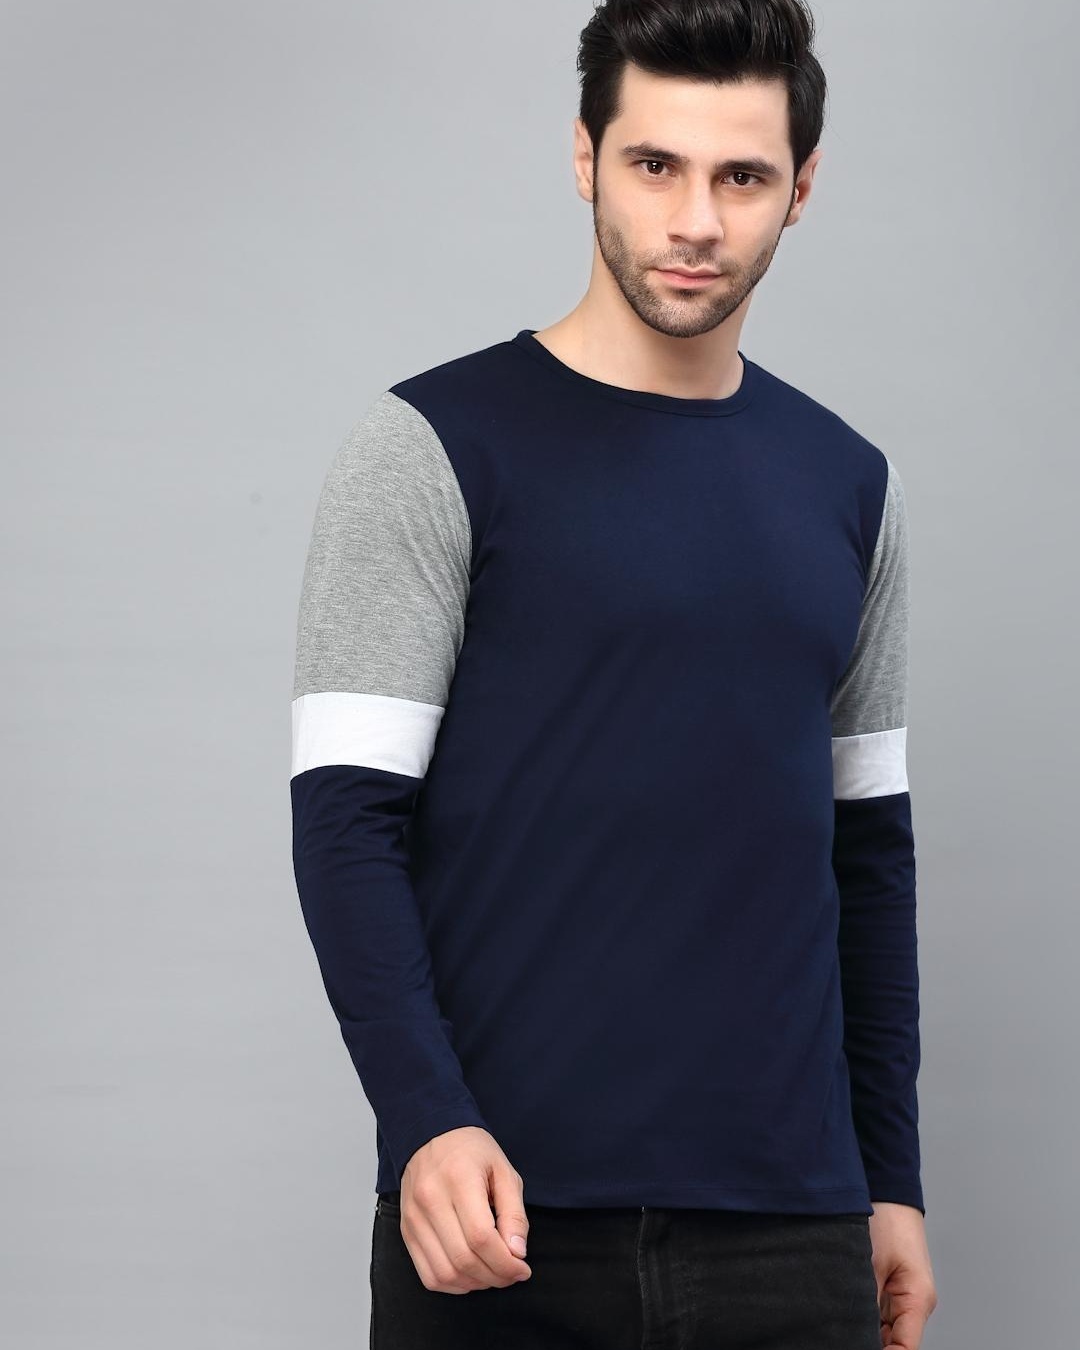 Buy Men's Blue and Grey Color Block Slim Fit T-shirt Online at Bewakoof